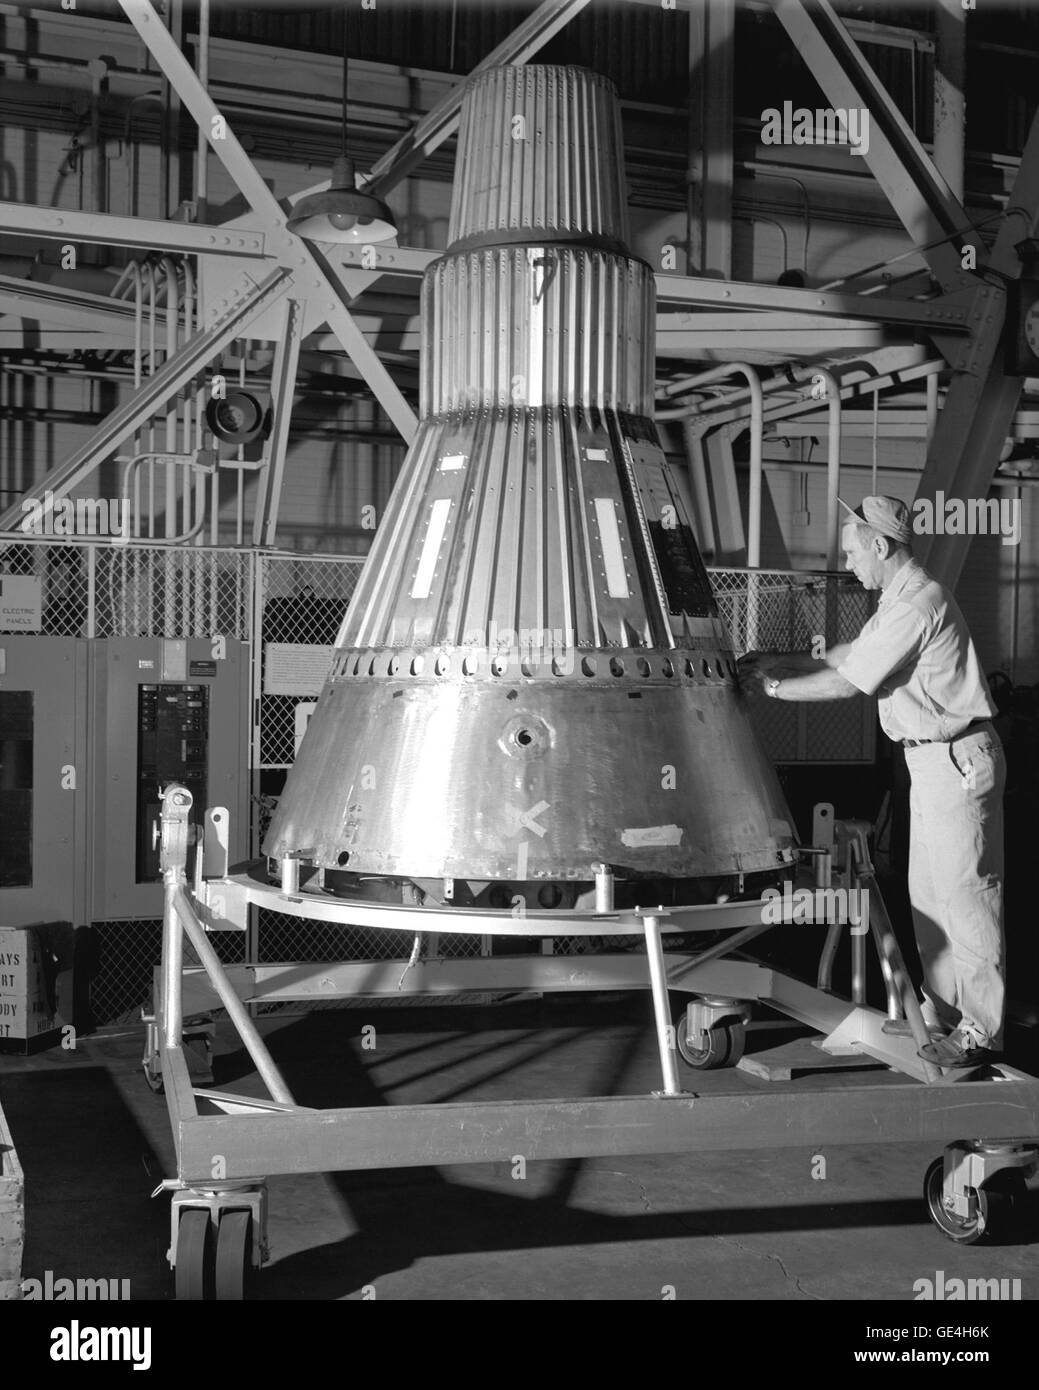 (3 agosto 1959) Progetto Mercurio - capsula #2. La capsula completa in Lewis Hangar vicino a Cleveland, Ohio. Lewis è ora noto come Il Glenn Research Center. Immagine # : C1959-51324 Foto Stock